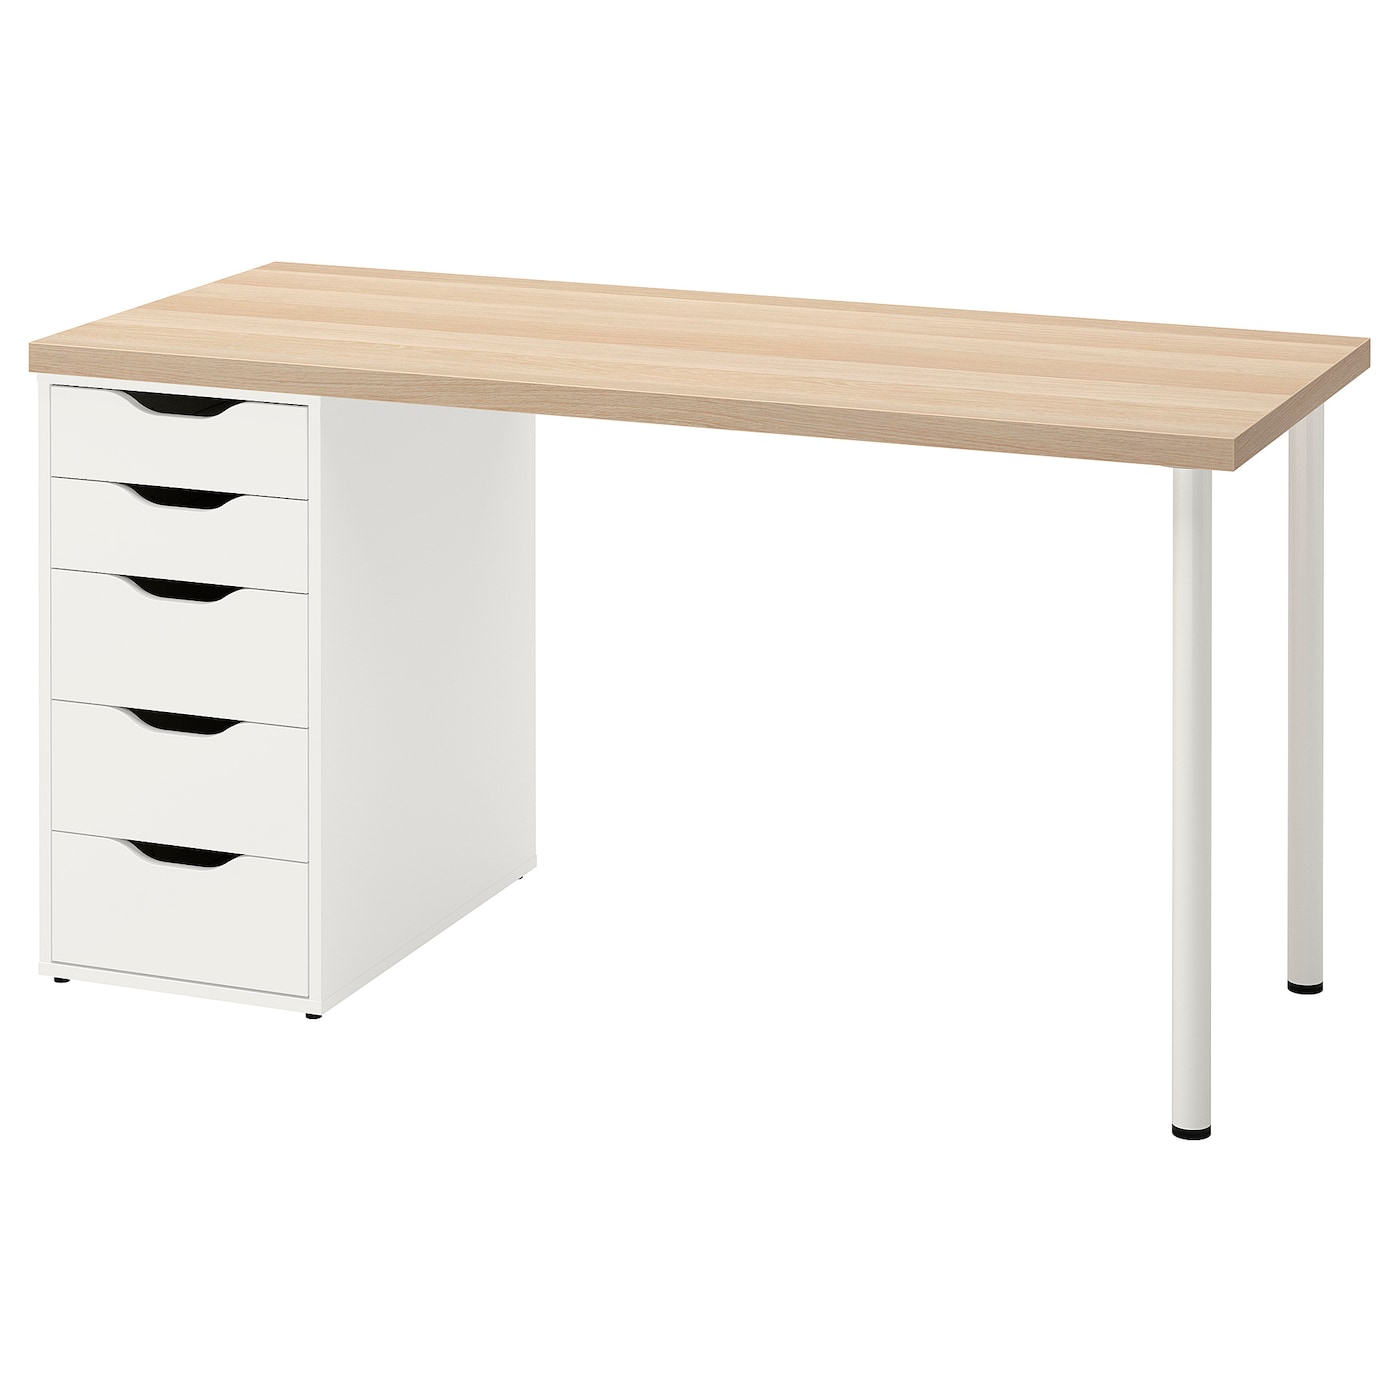 Письменный стол с ящиками - IKEA LAGKAPTEN/ALEX/ЛАГКАПТЕН/АЛЕКС ИКЕА, 140х60 см, под беленый дуб/белый,